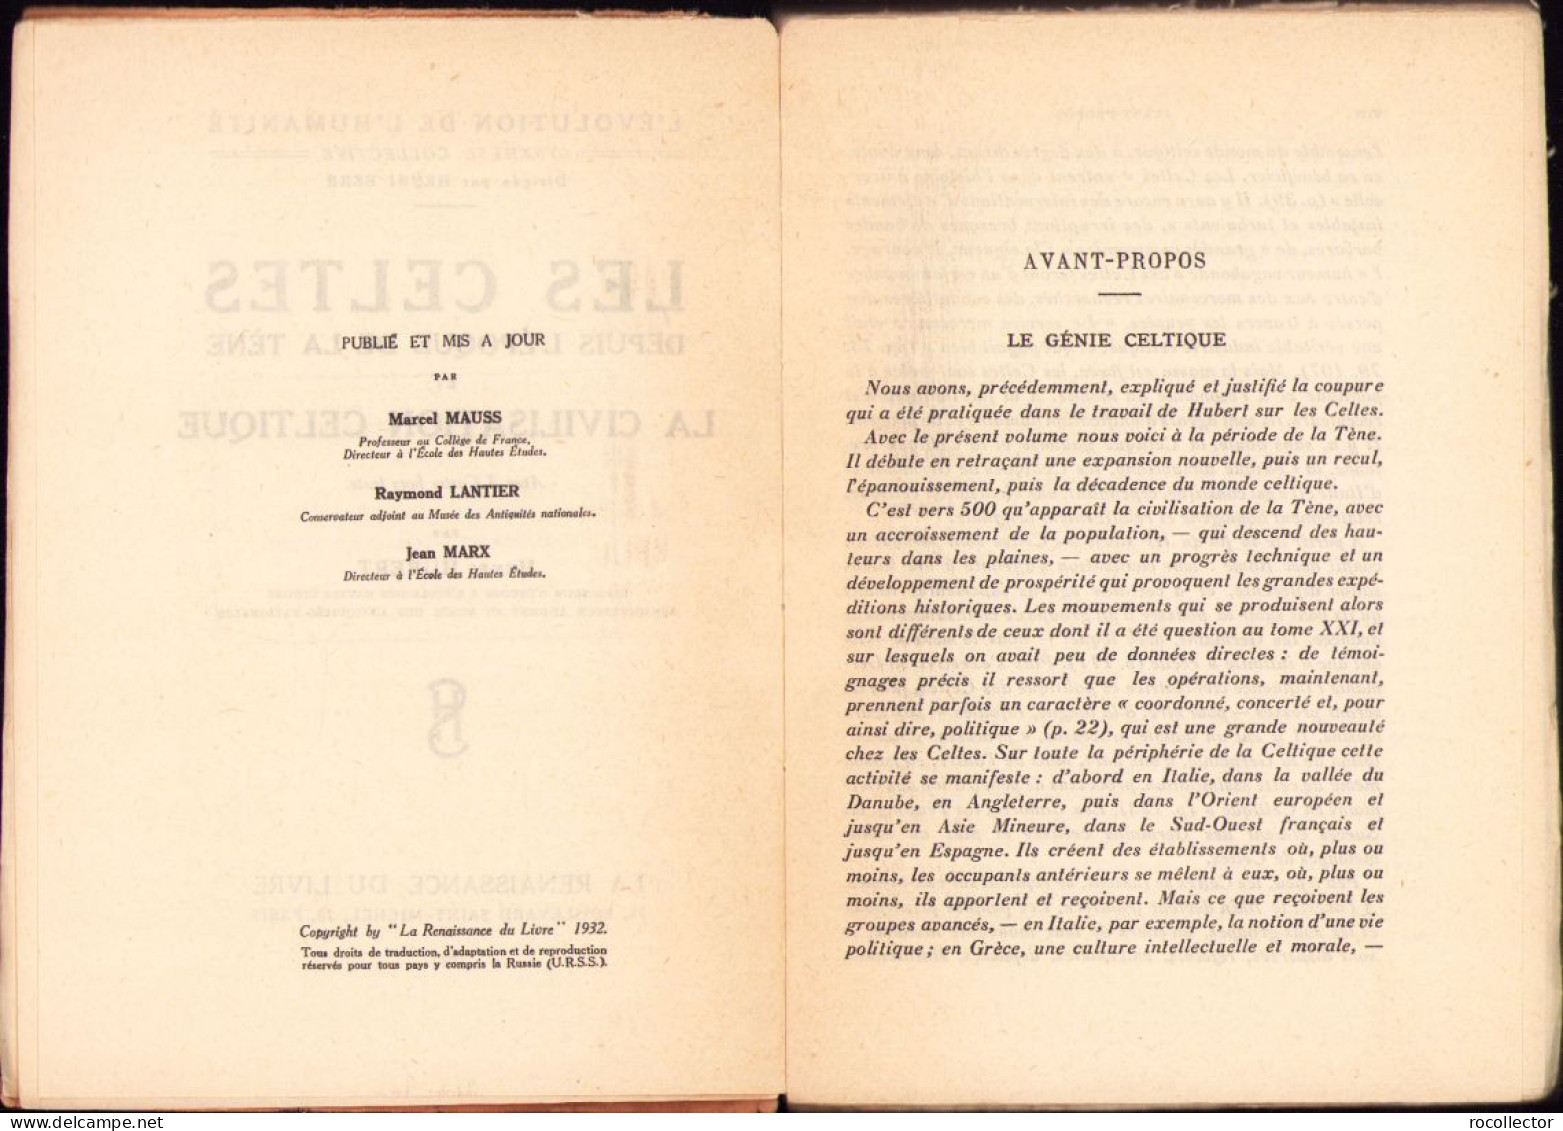 Les Celtes Depuis L’epoque De La Tene Et La Civilisation Celtique Par Henri Hubert, 1932 642SP - Libros Antiguos Y De Colección